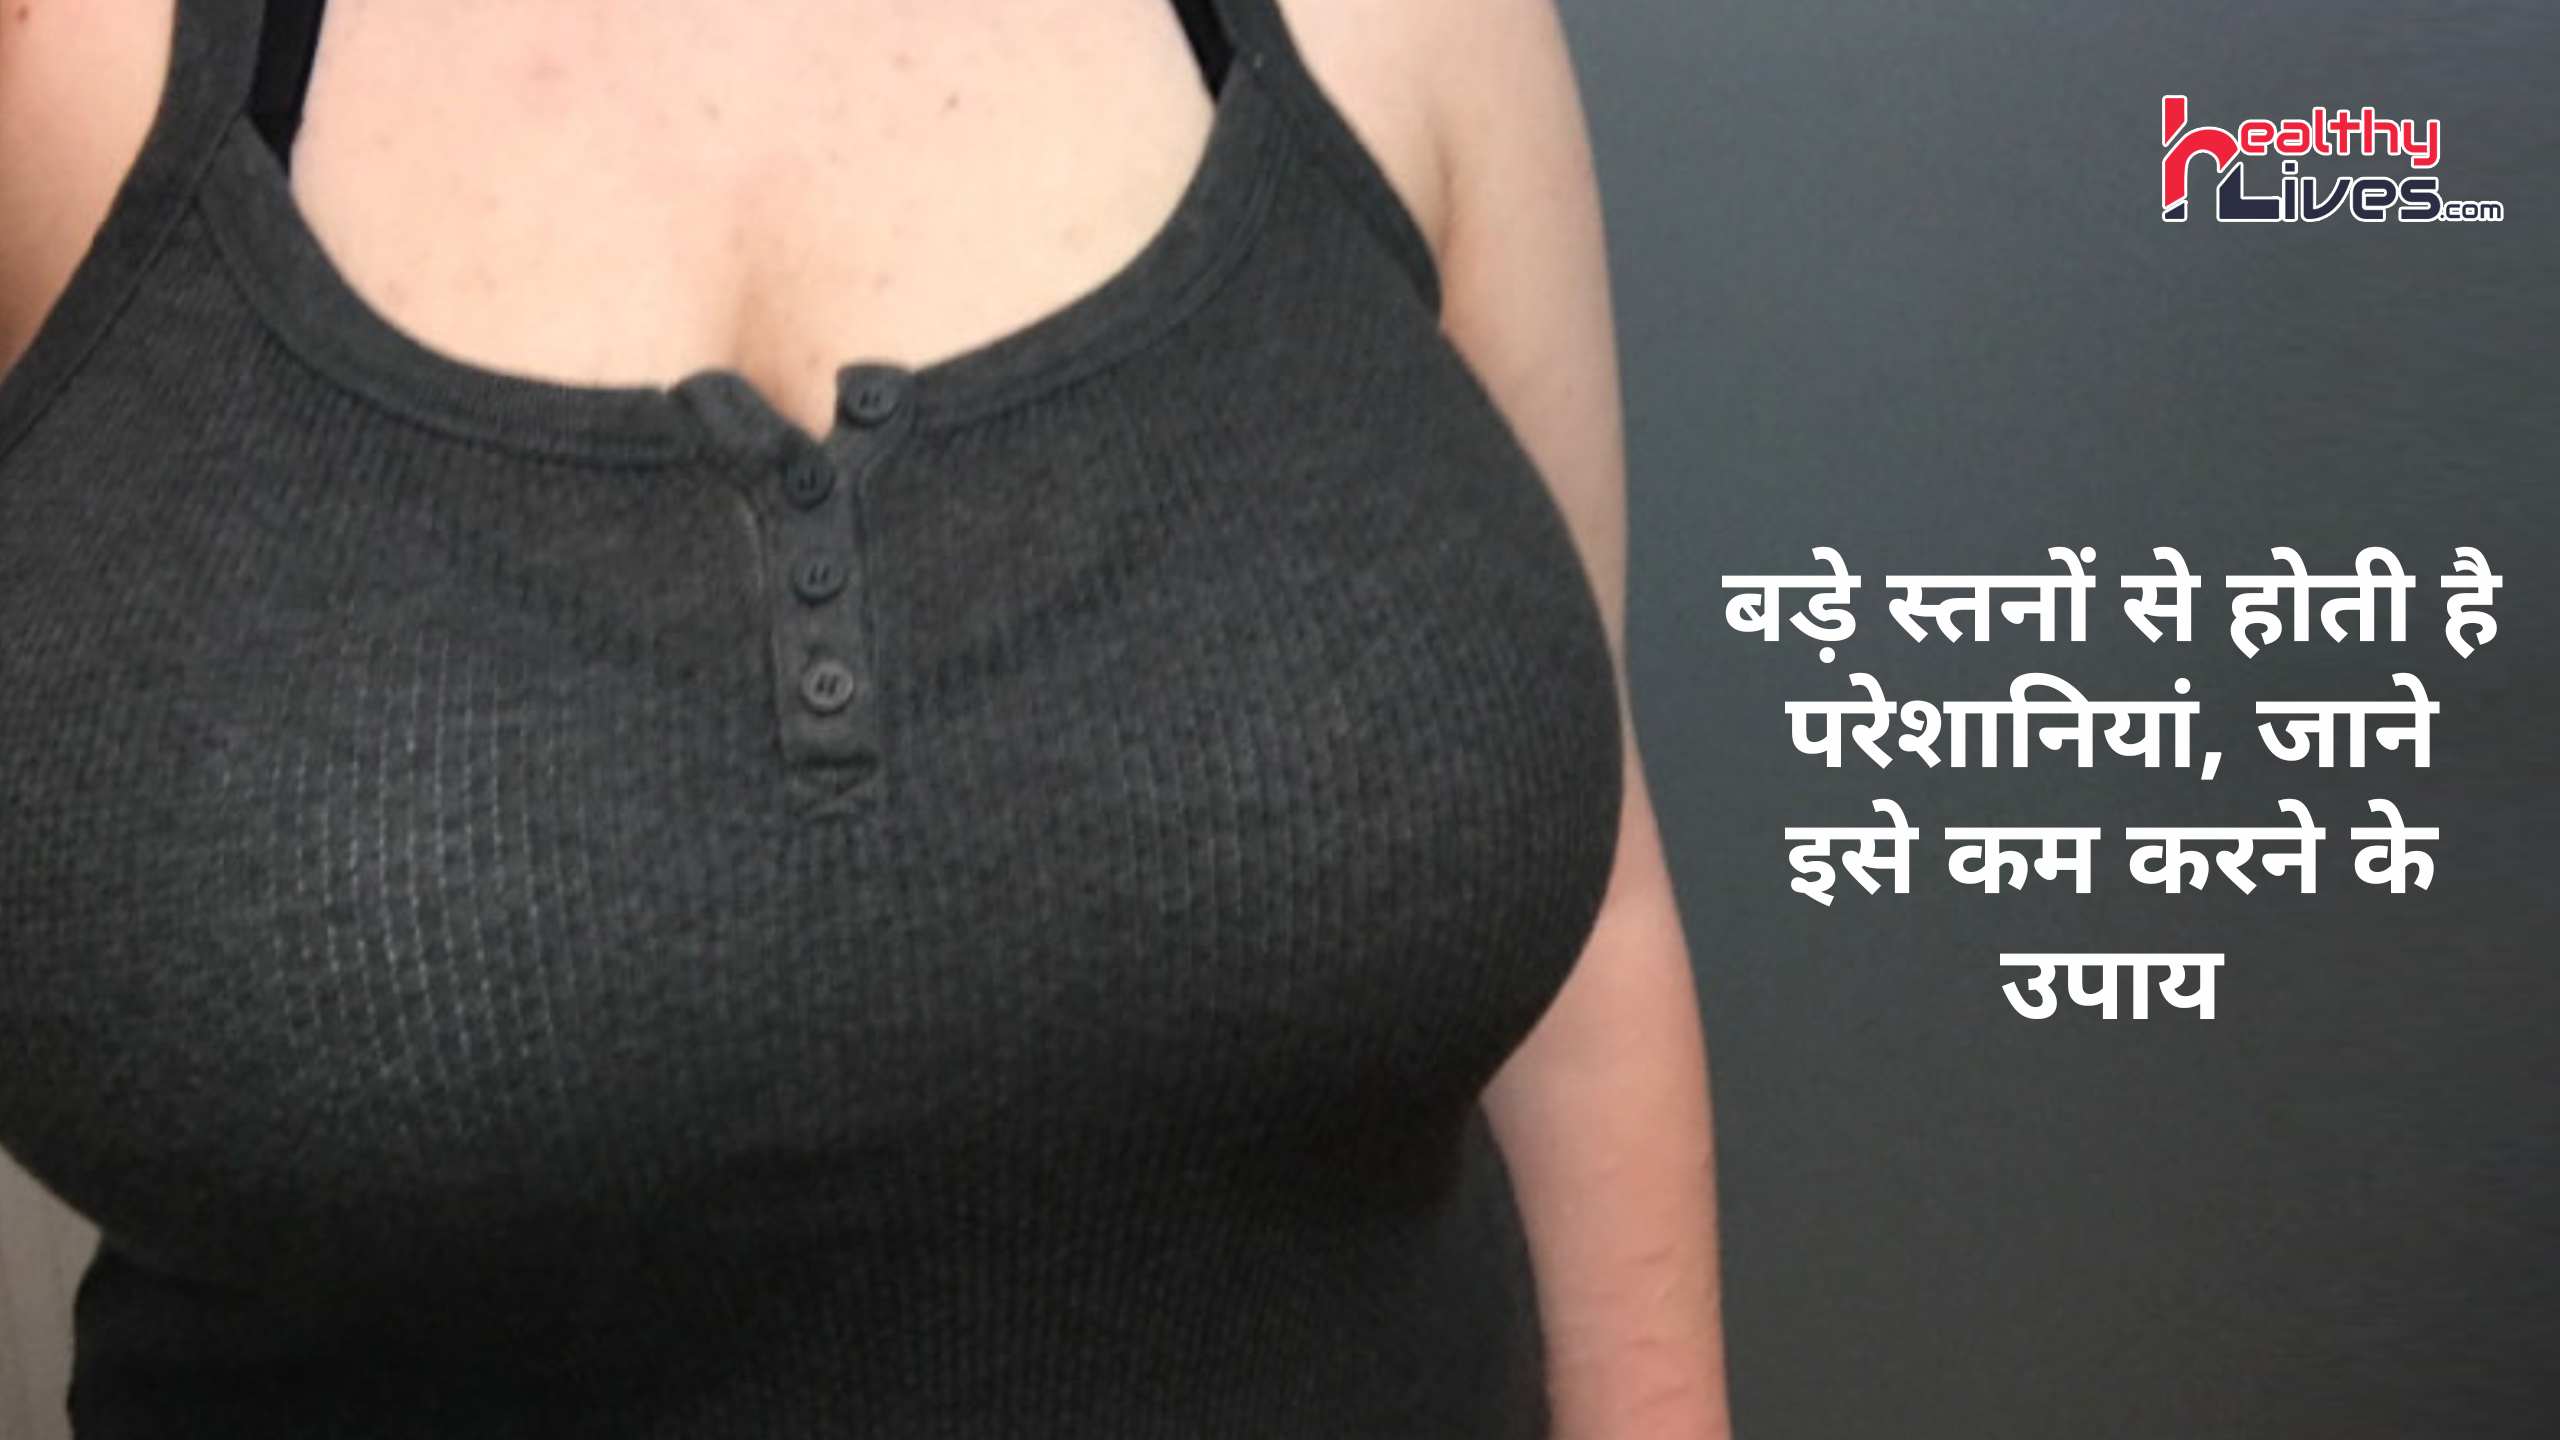 Breast Kam Karne ke Upay: स्तनों के बड़े आकार से होती है परेशानी, जाने इसे कम करने के तरीके